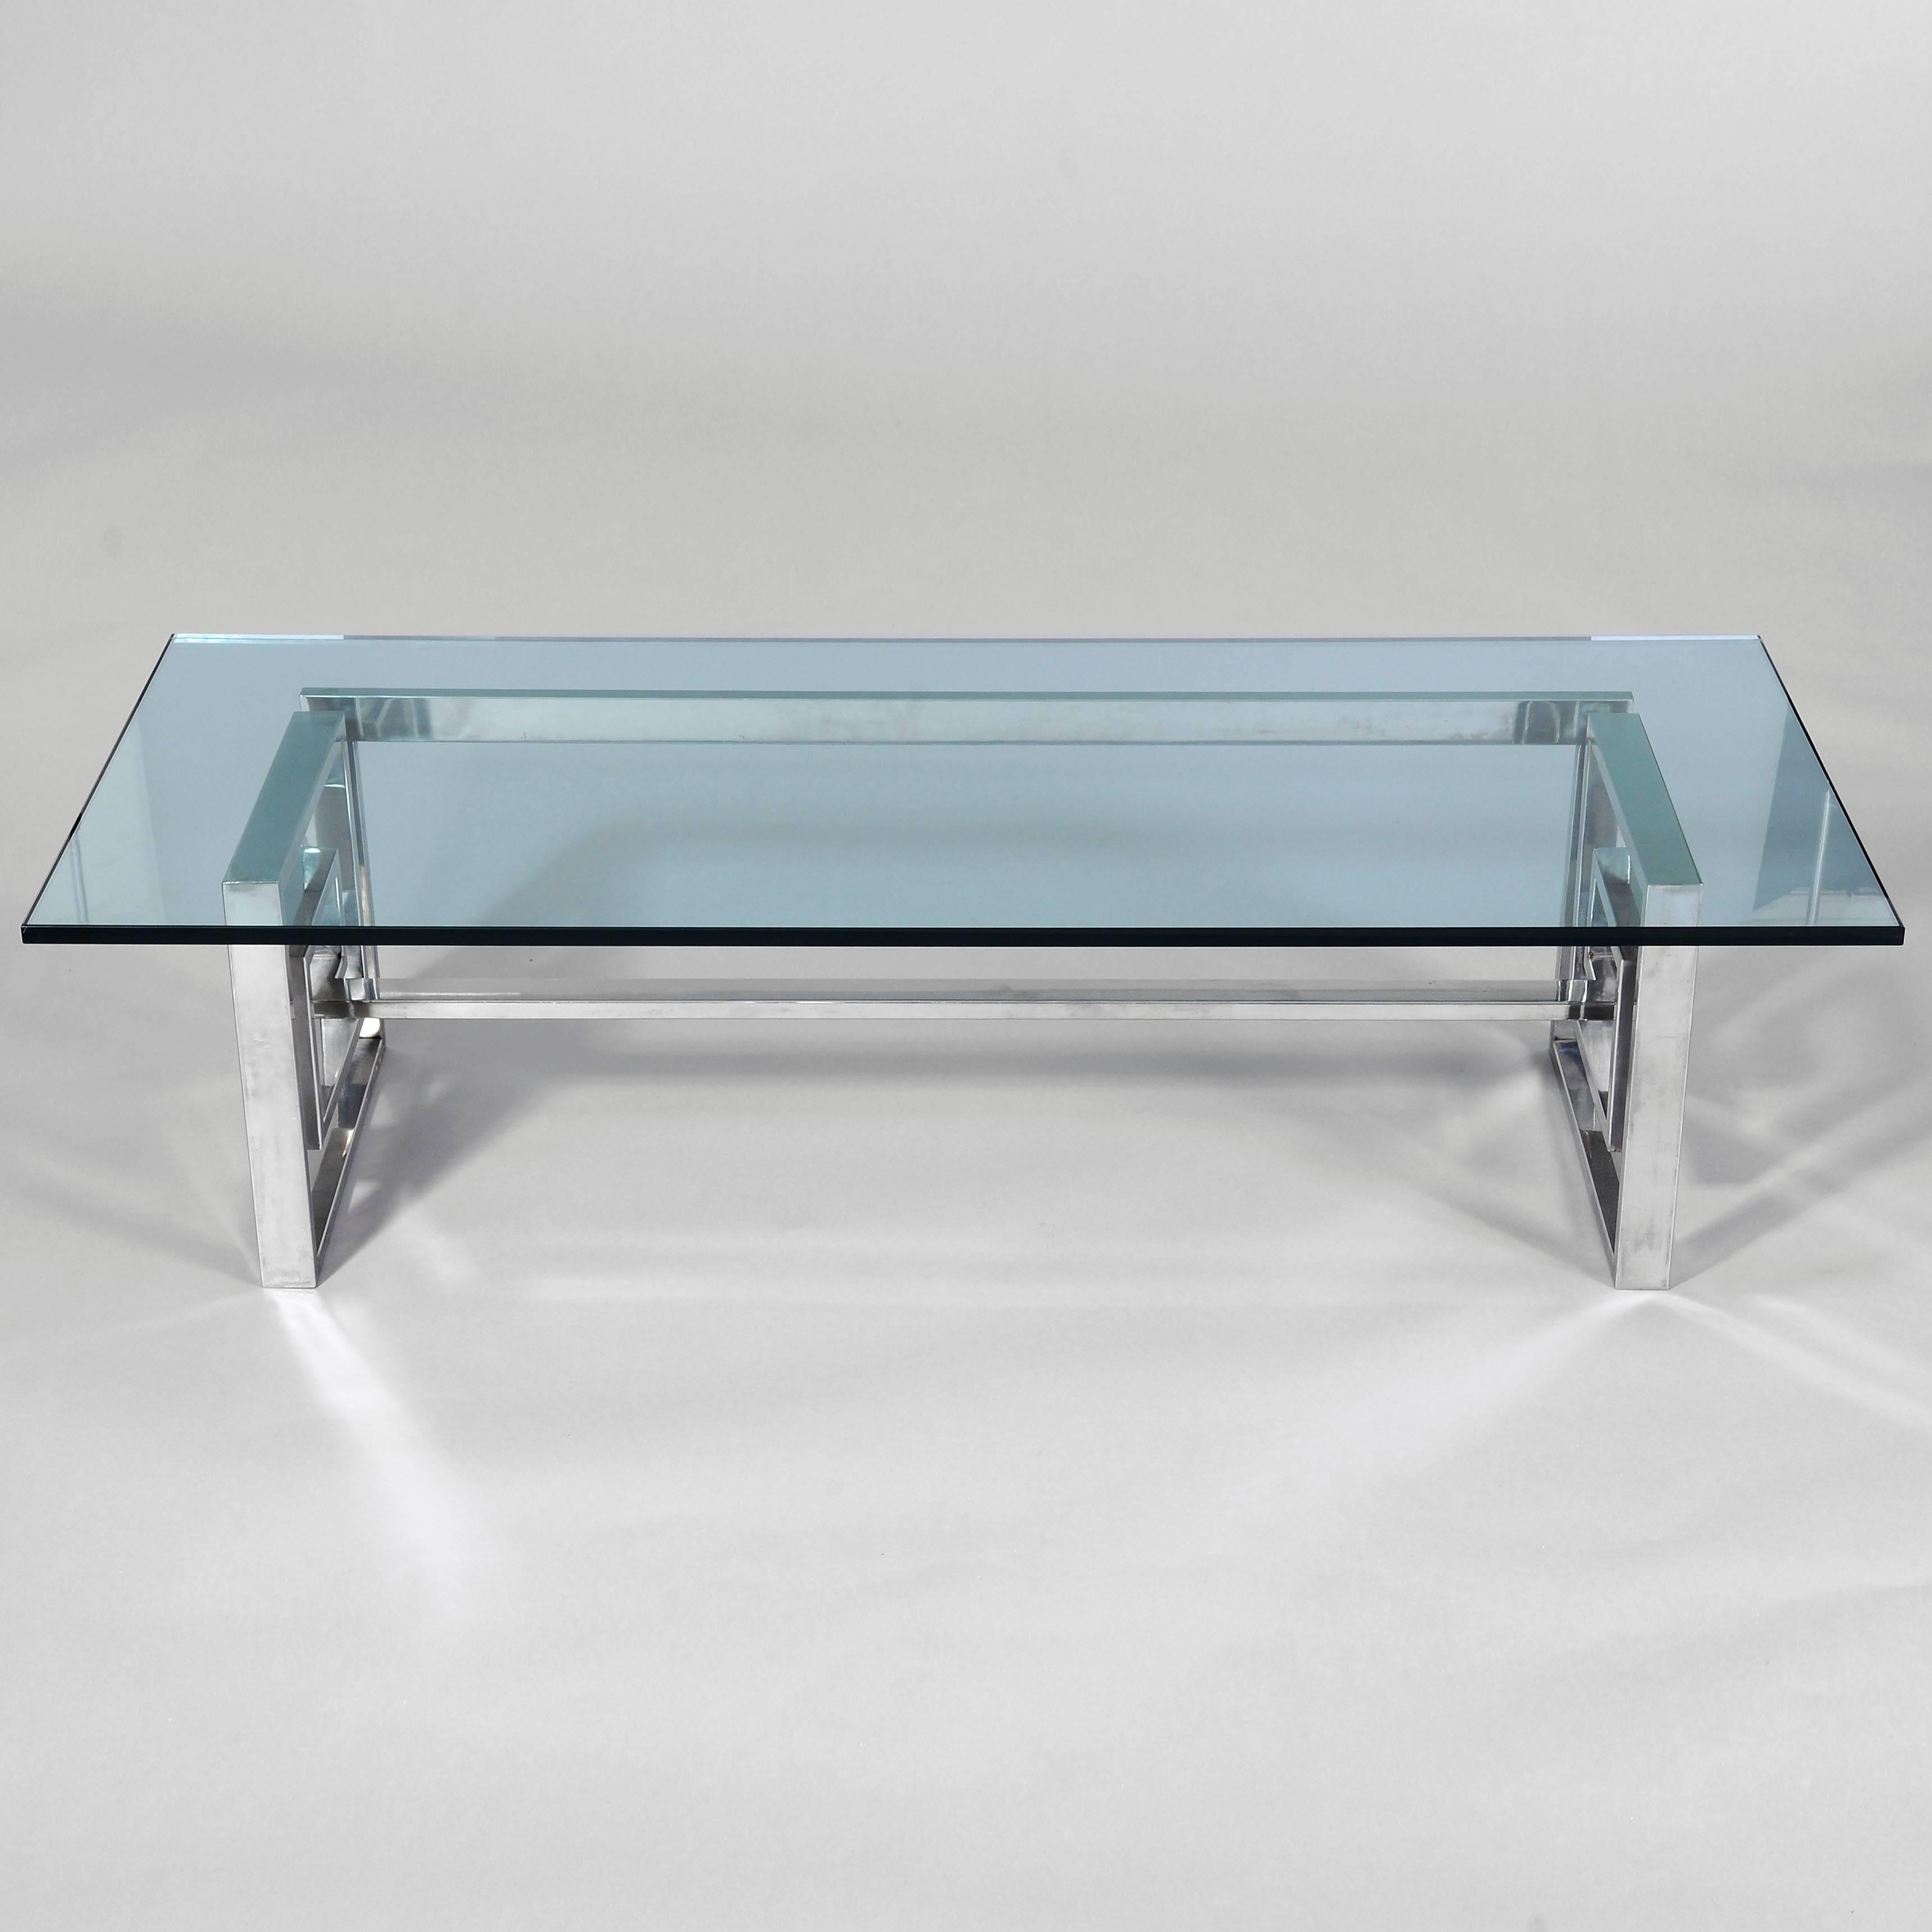 Une table glamour en acier et en verre. La base en acier, façonnée en une bande continue, supporte un plateau en verre épais et substantiel de 20 mm (environ 3/4 de pouce). La base porte la marque 